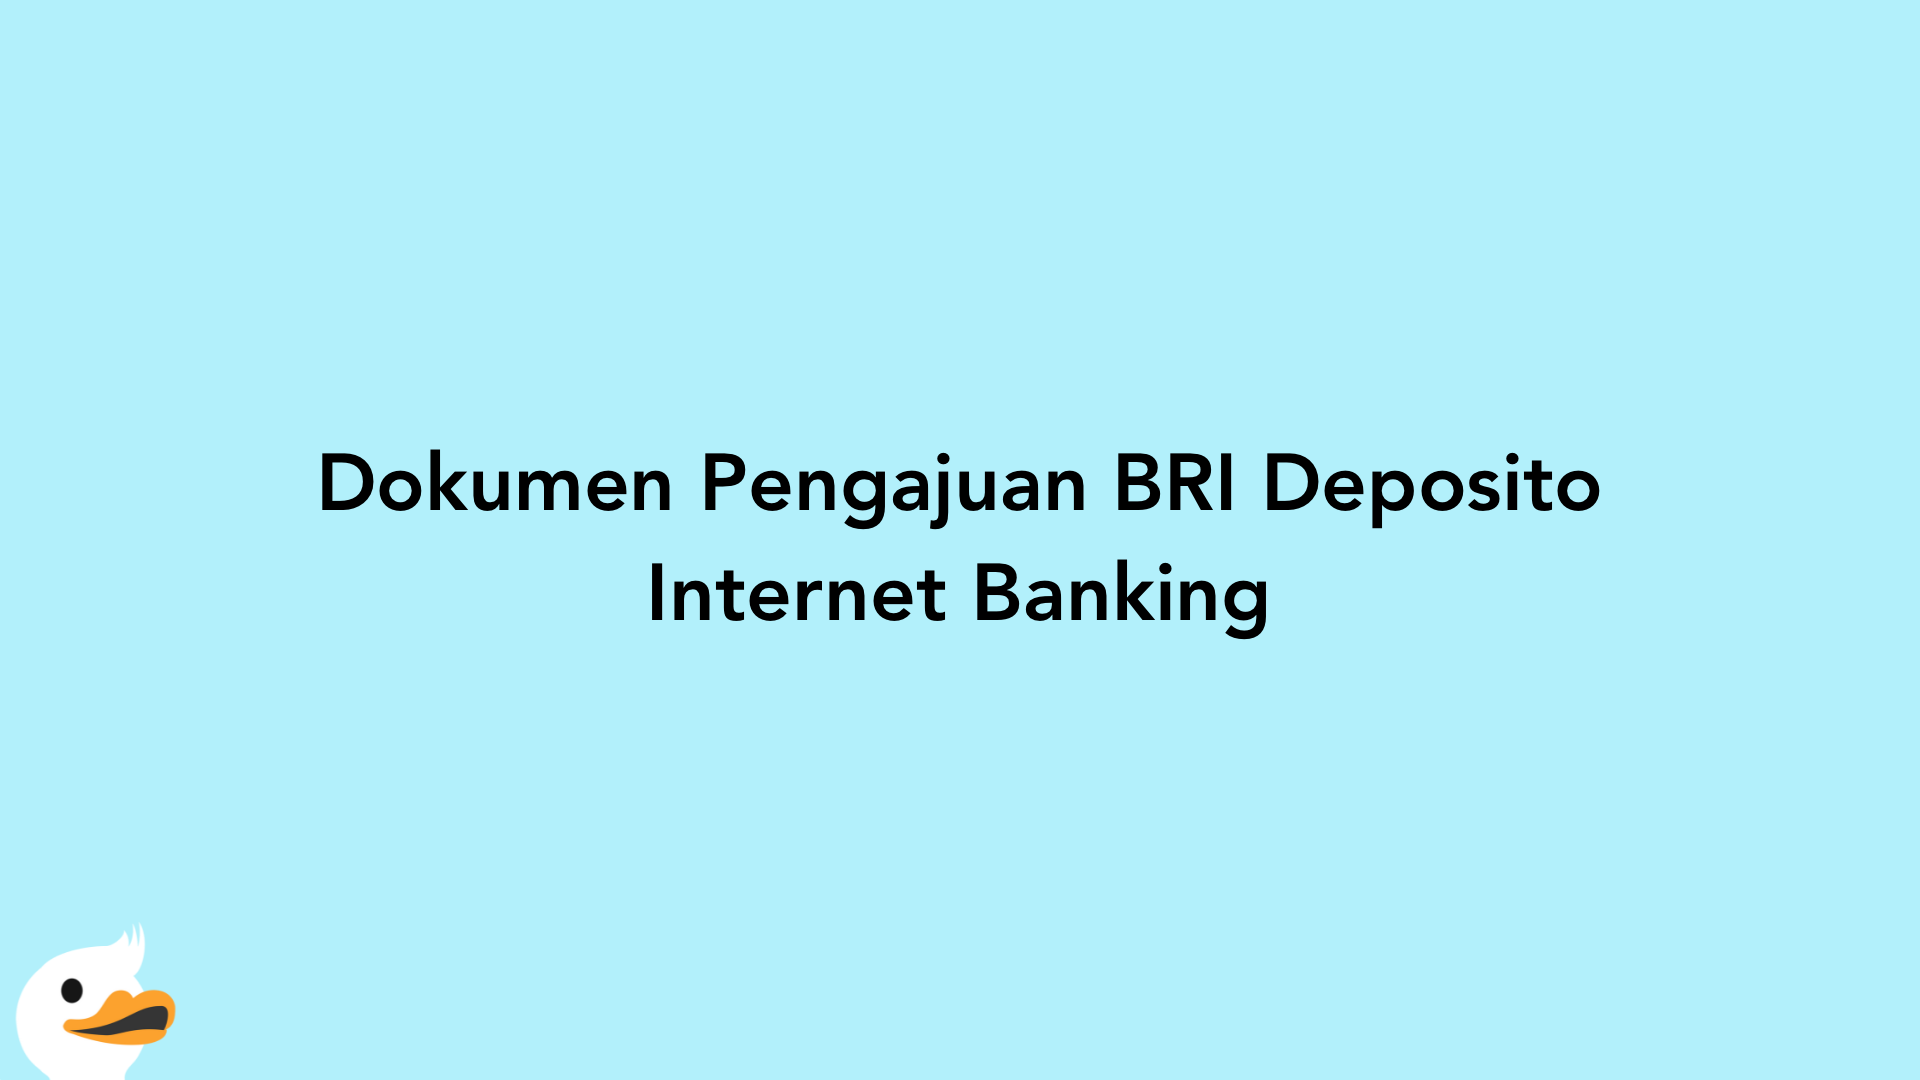 Dokumen Pengajuan BRI Deposito Internet Banking